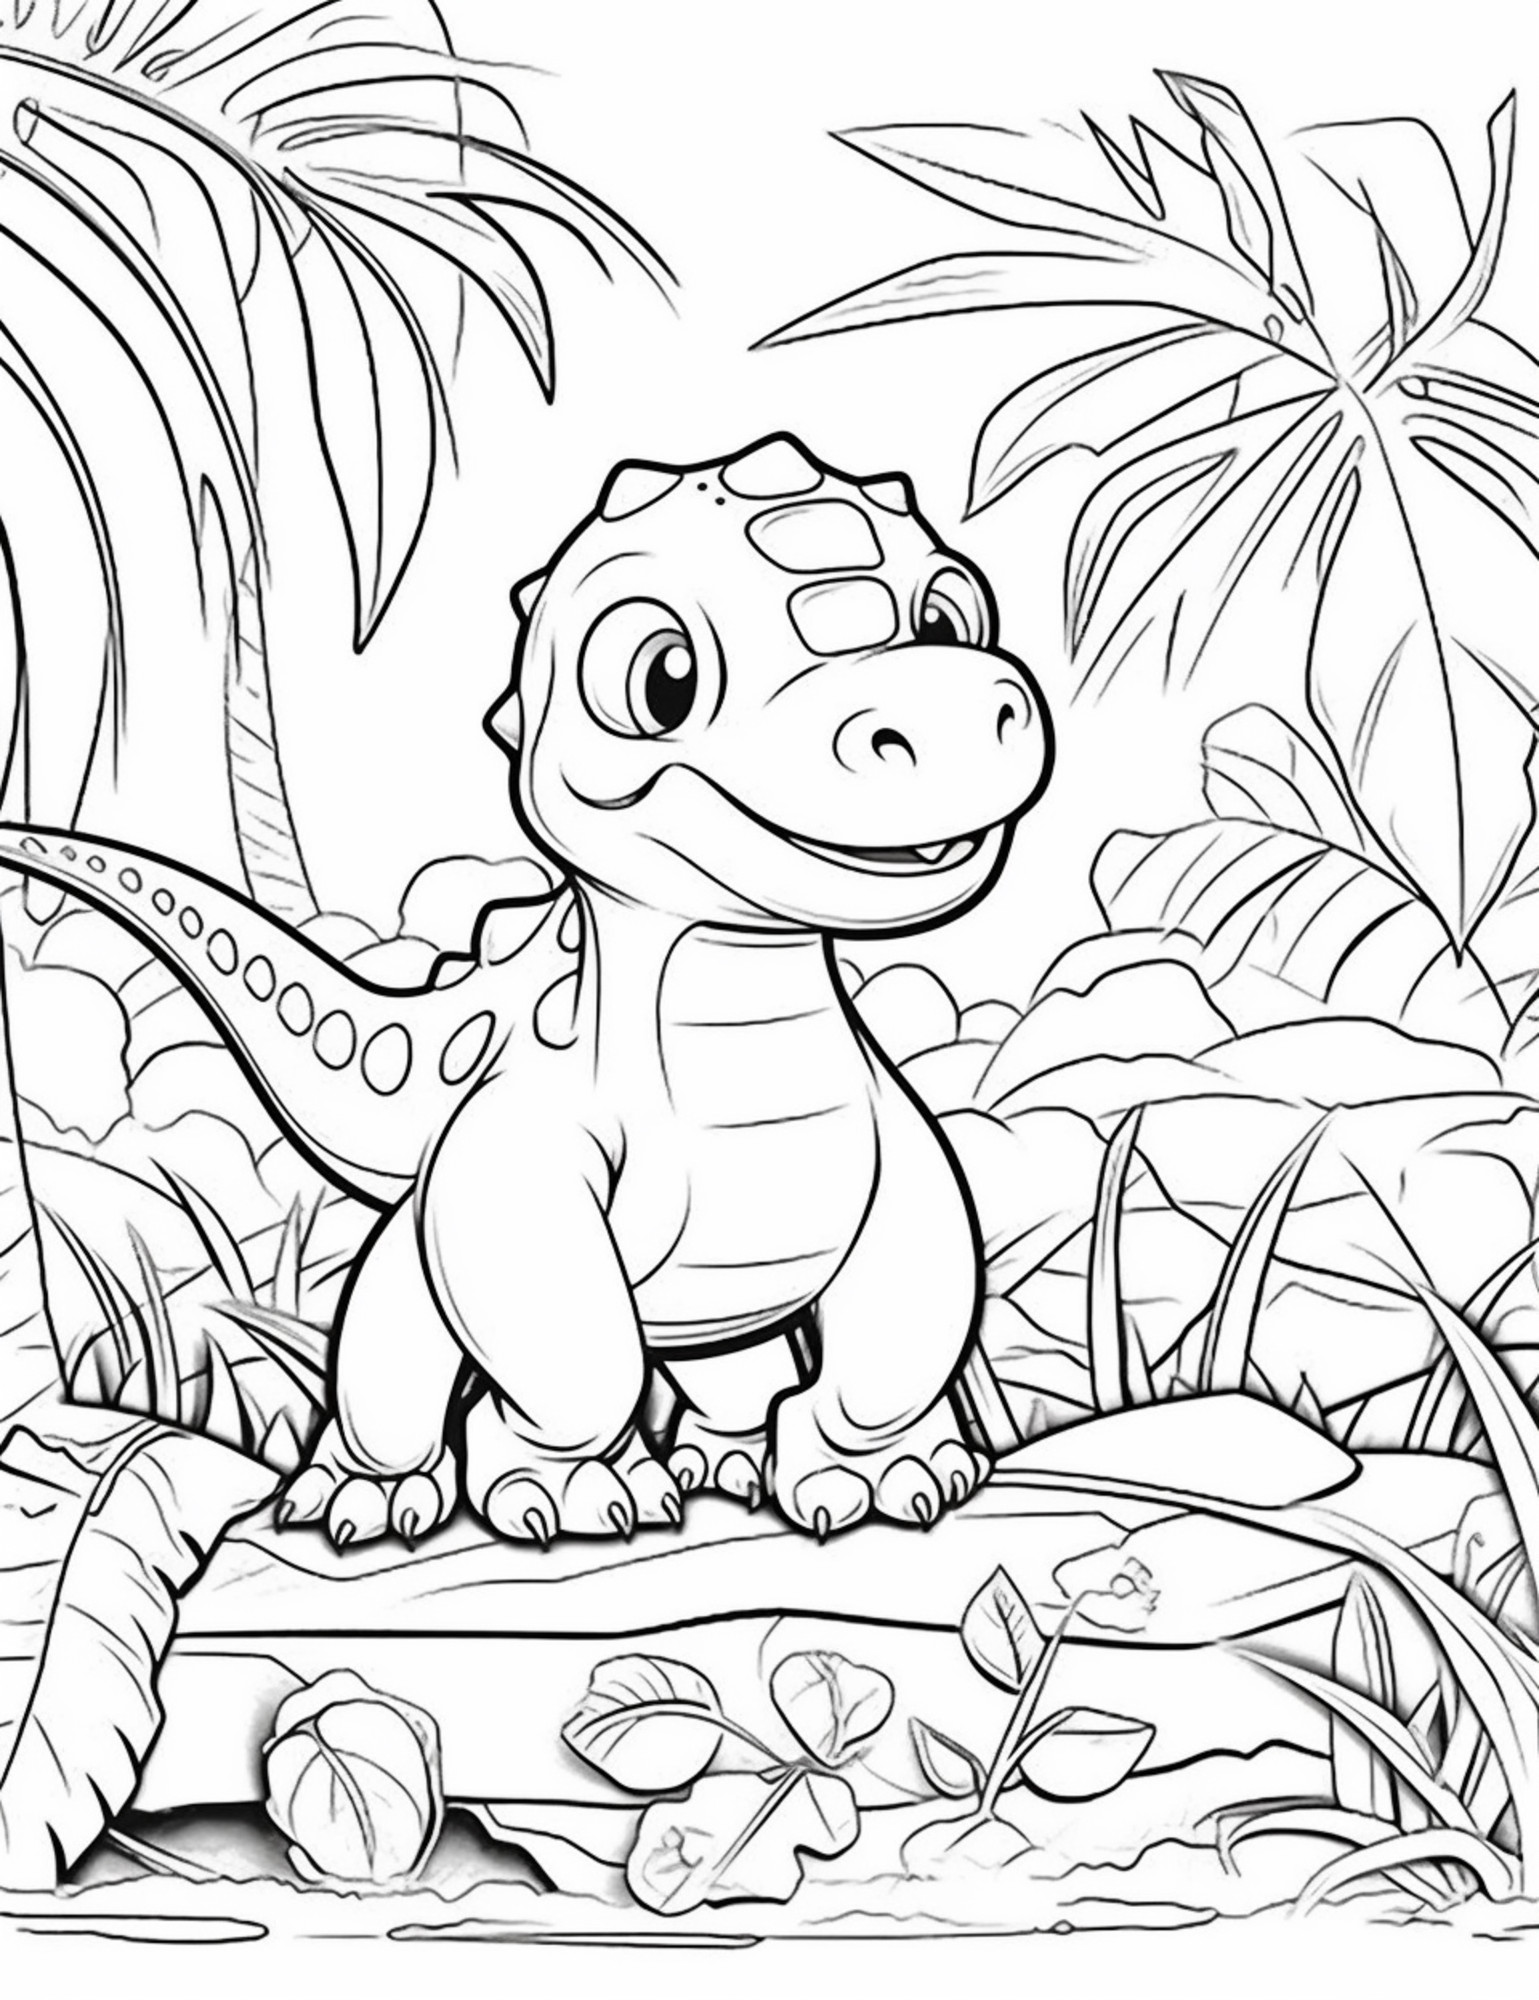 Раскраска для детей: мультяшный динозавр сидит на камне в джунглях